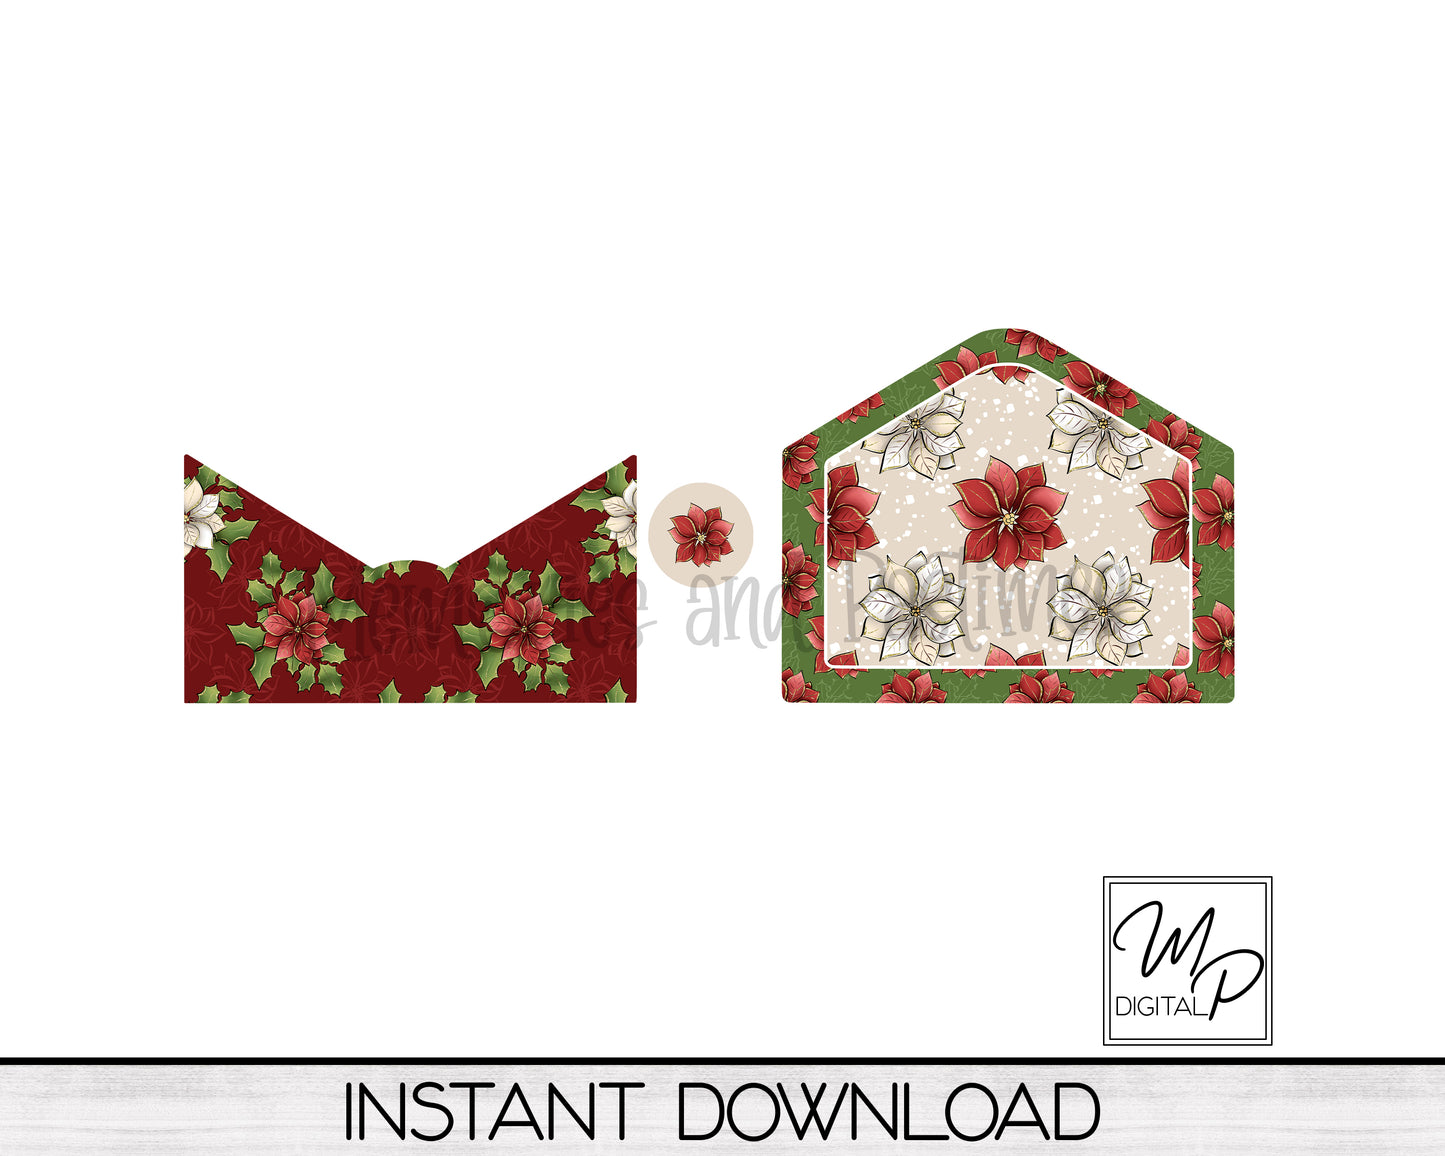 Christmas Letter / Gift Card Holder PNG Design for Sublimation, Digital Download